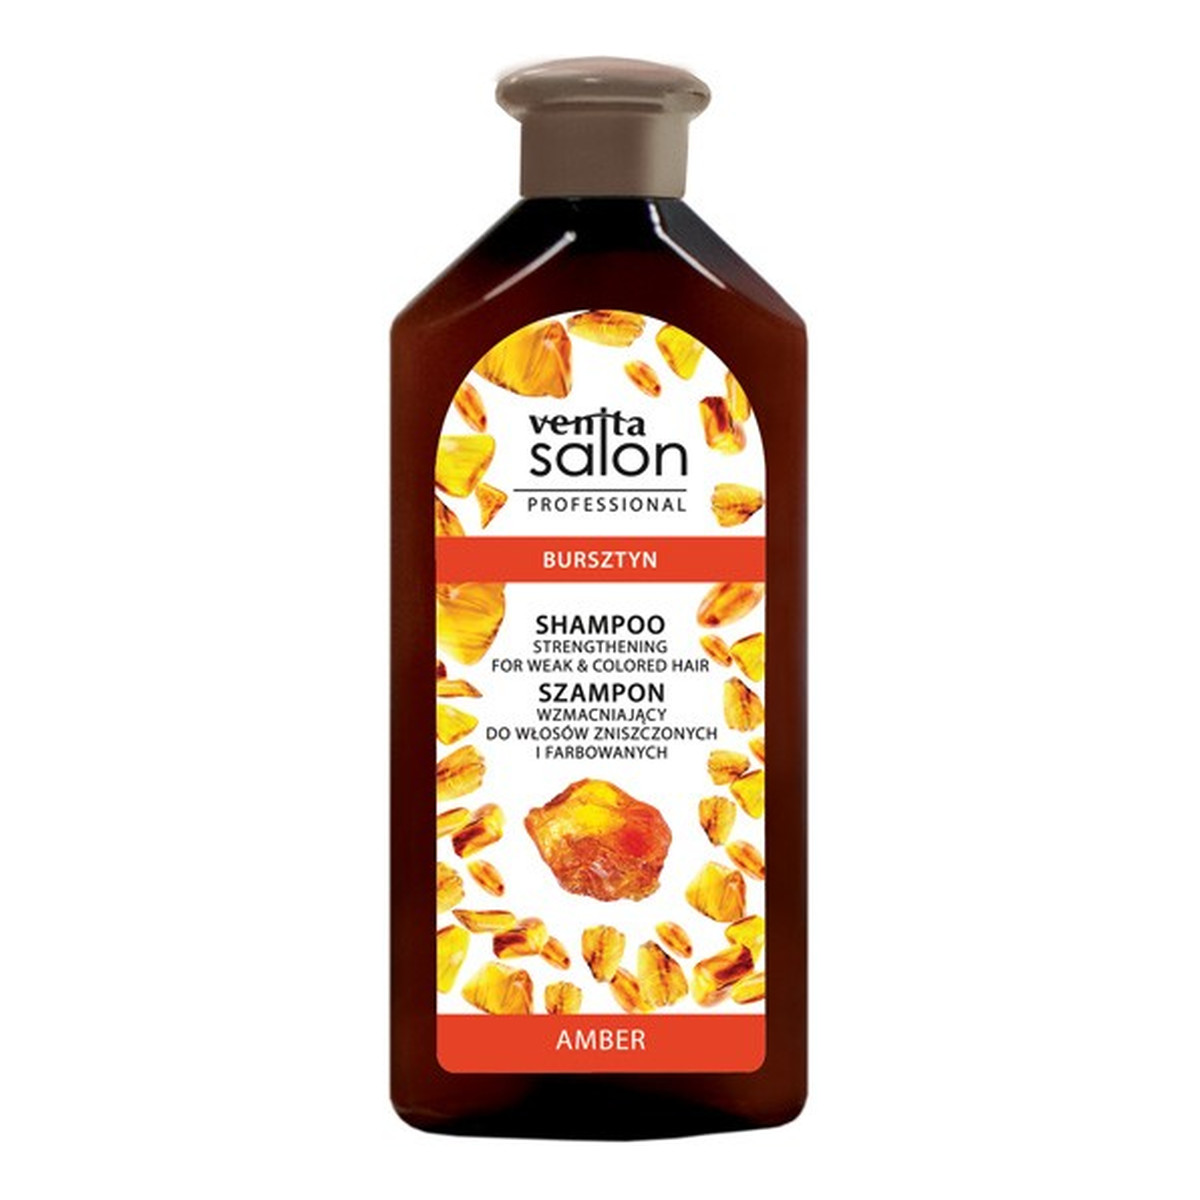 Venita Salon professional szampon wzmacniający do włosów zniszczonych i farbowanych-bursztyn 500ml